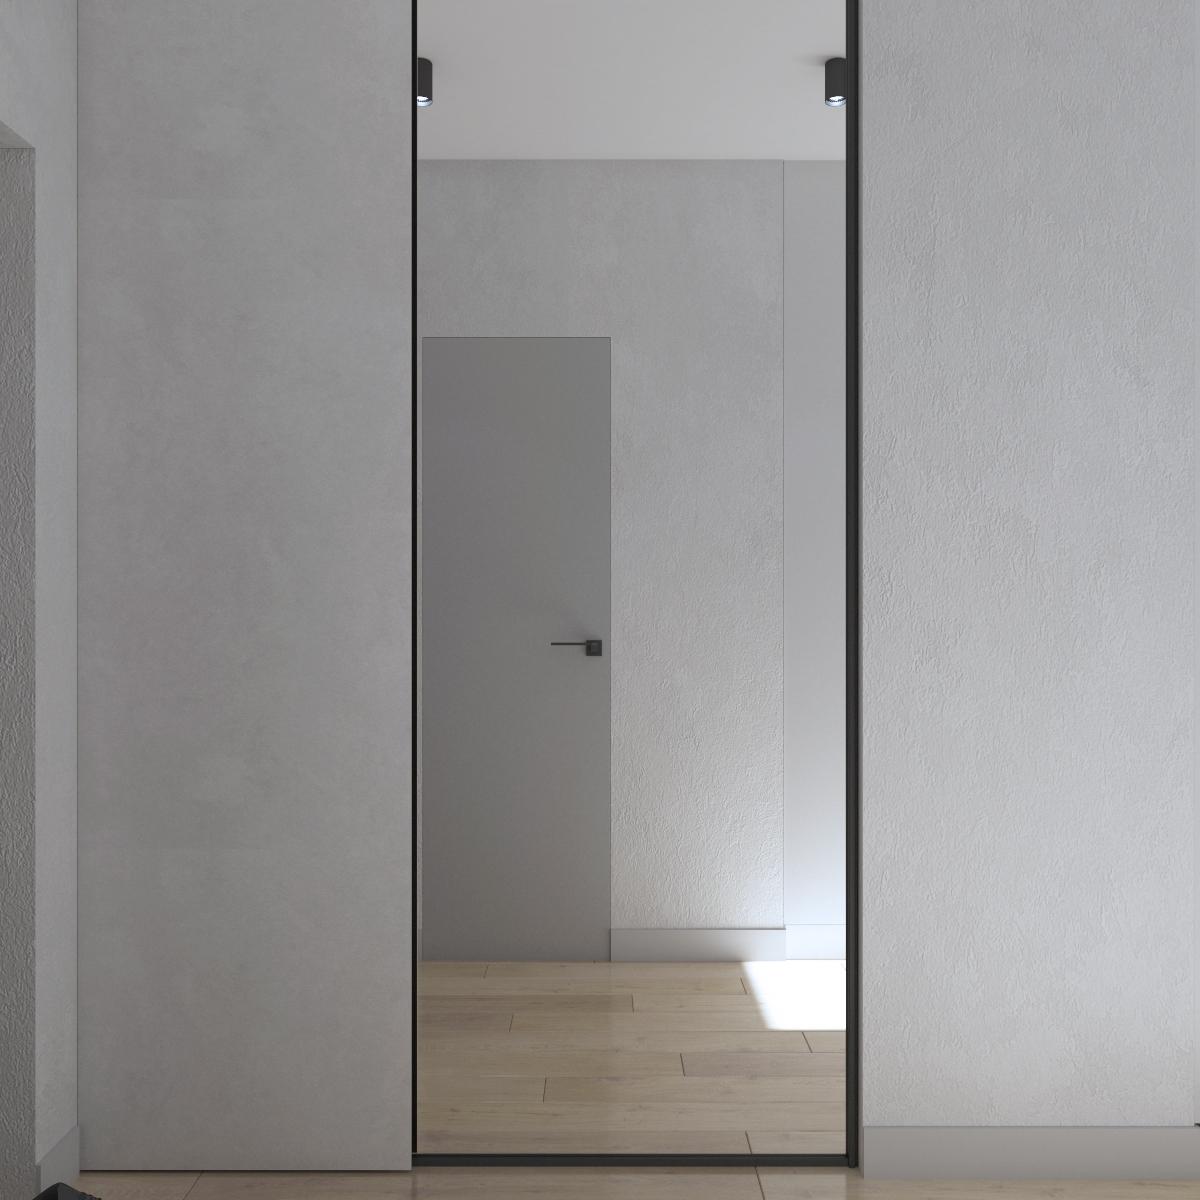 Интерьер с зеркалом на двери